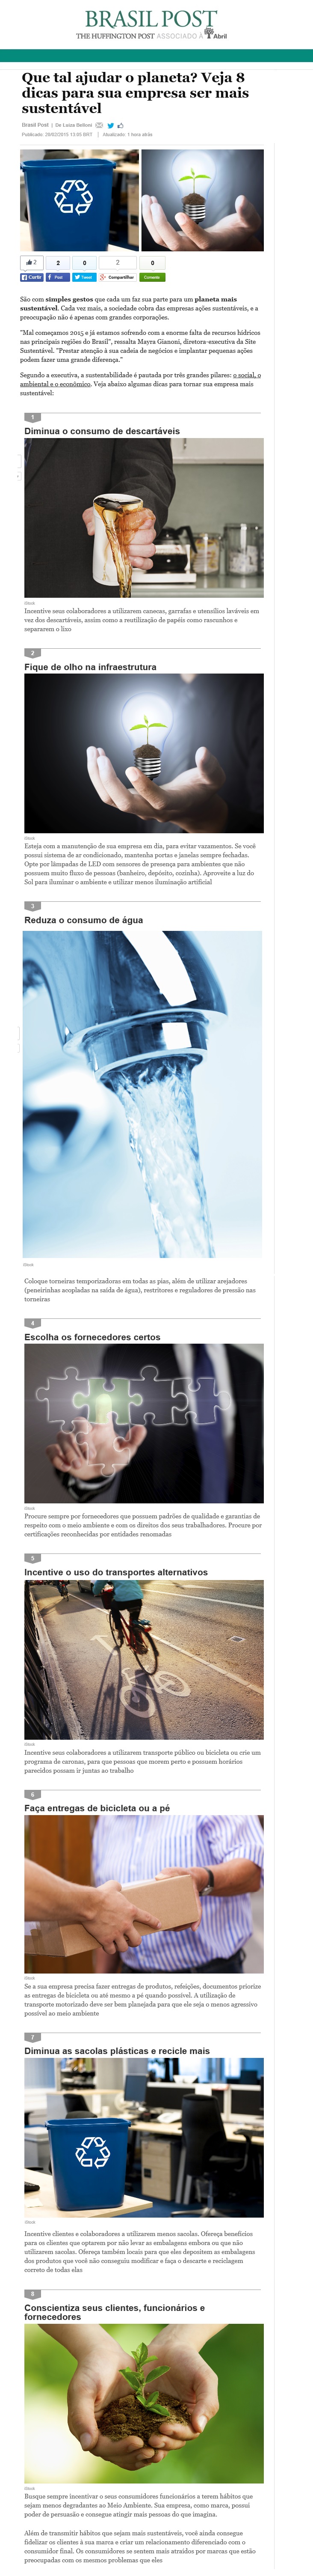 Site Sustentável no Brasil Post "Editora Abril" - 20.02.2015